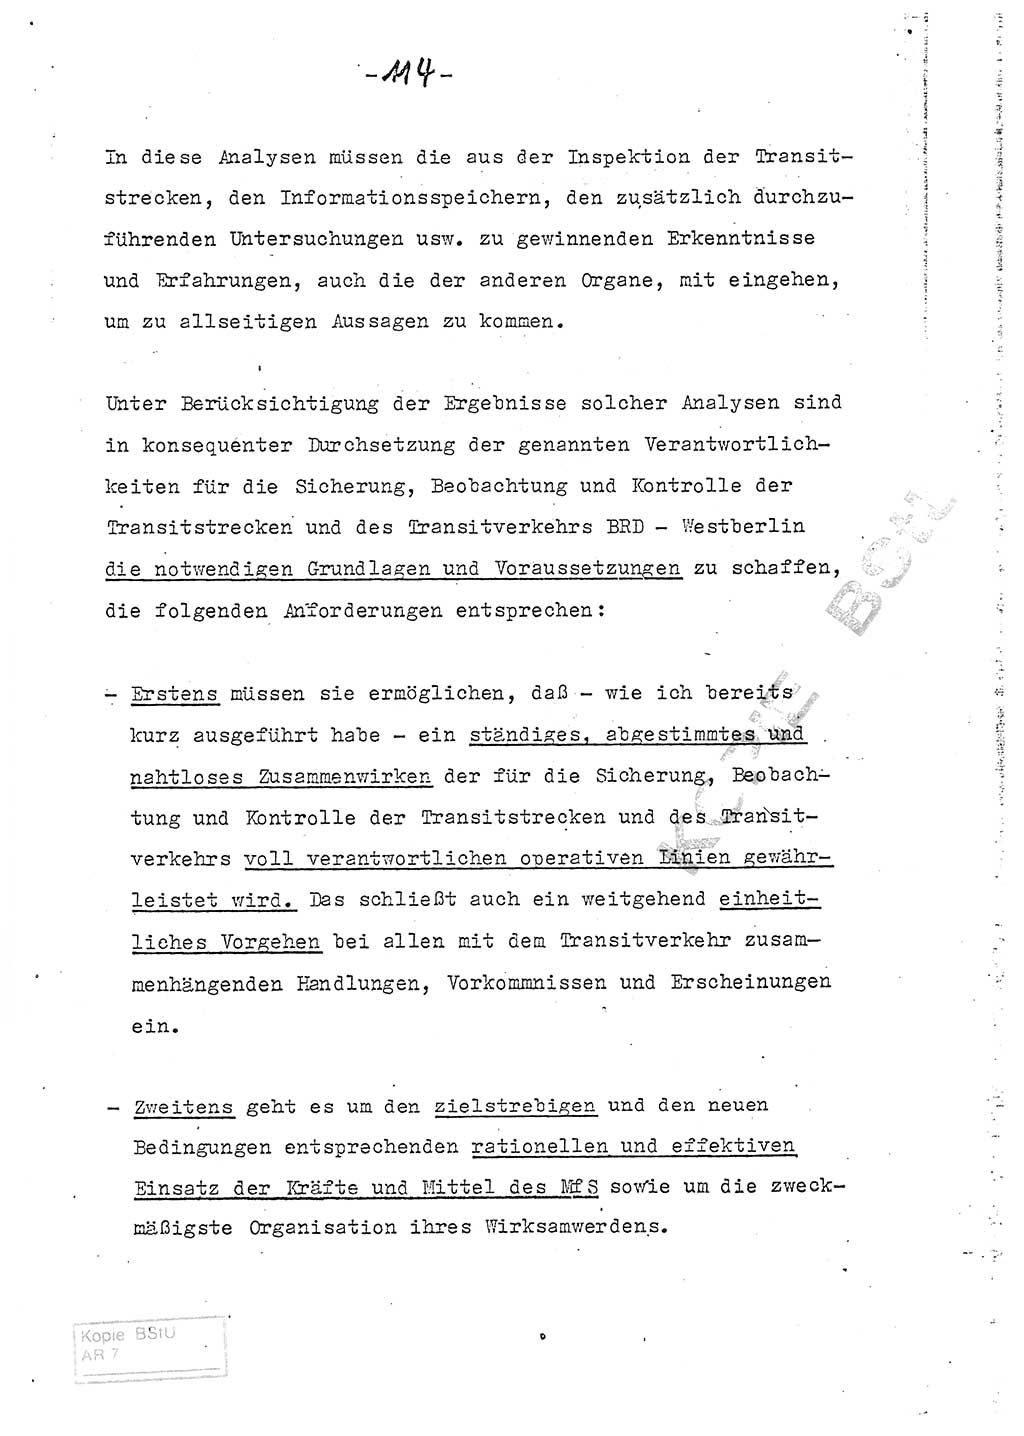 Referat (Entwurf) des Genossen Minister (Generaloberst Erich Mielke) auf der Dienstkonferenz 1972, Ministerium für Staatssicherheit (MfS) [Deutsche Demokratische Republik (DDR)], Der Minister, Geheime Verschlußsache (GVS) 008-150/72, Berlin 25.2.1972, Seite 114 (Ref. Entw. DK MfS DDR Min. GVS 008-150/72 1972, S. 114)